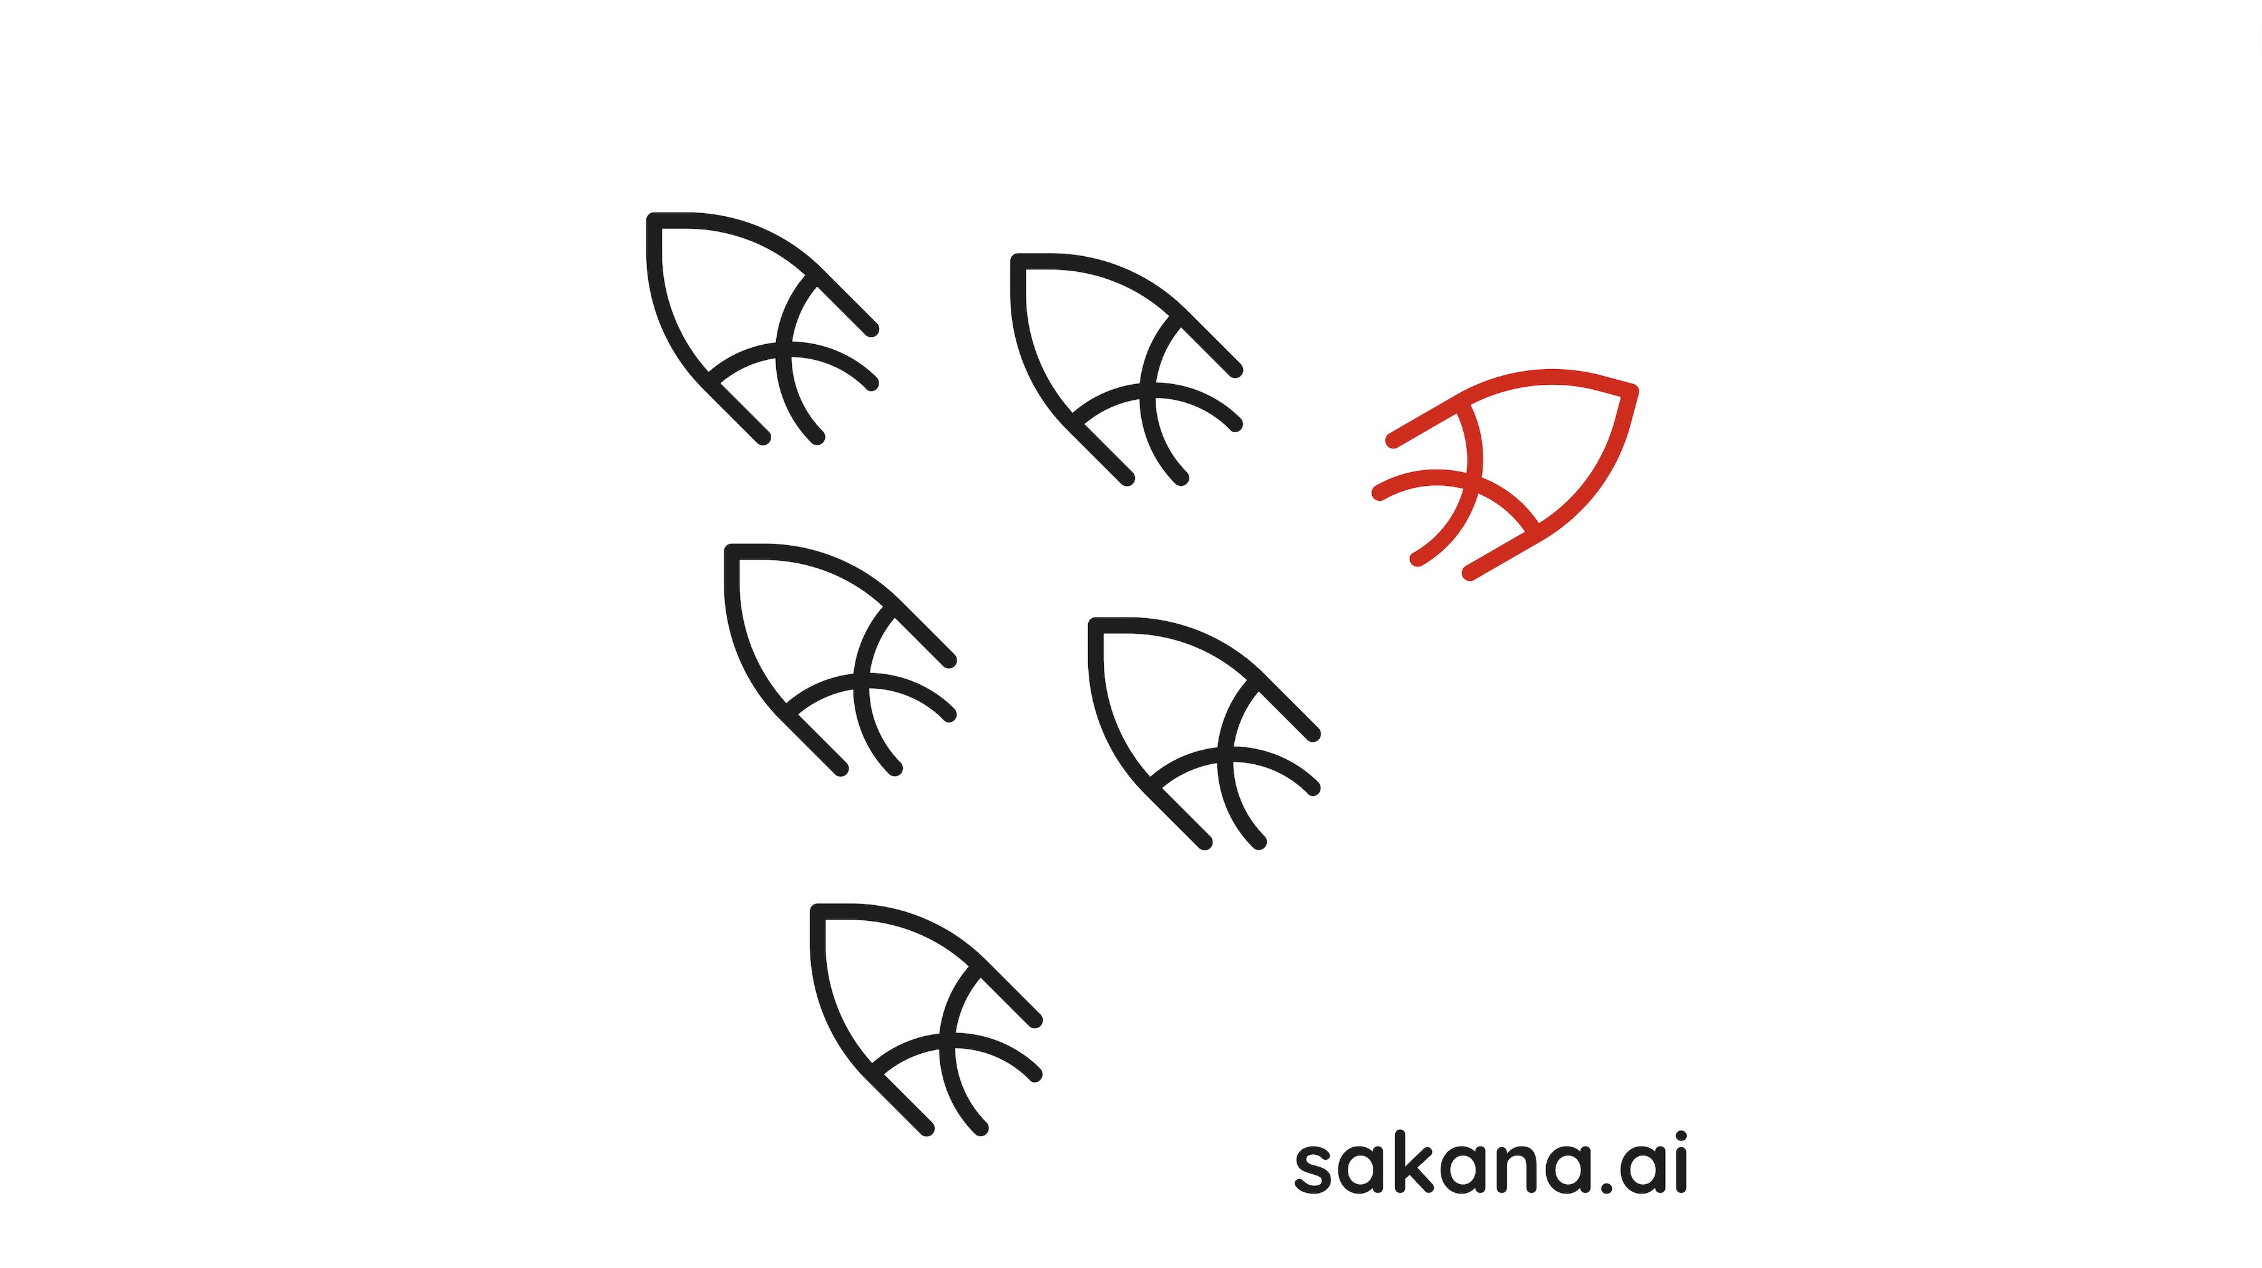 Sakana AI